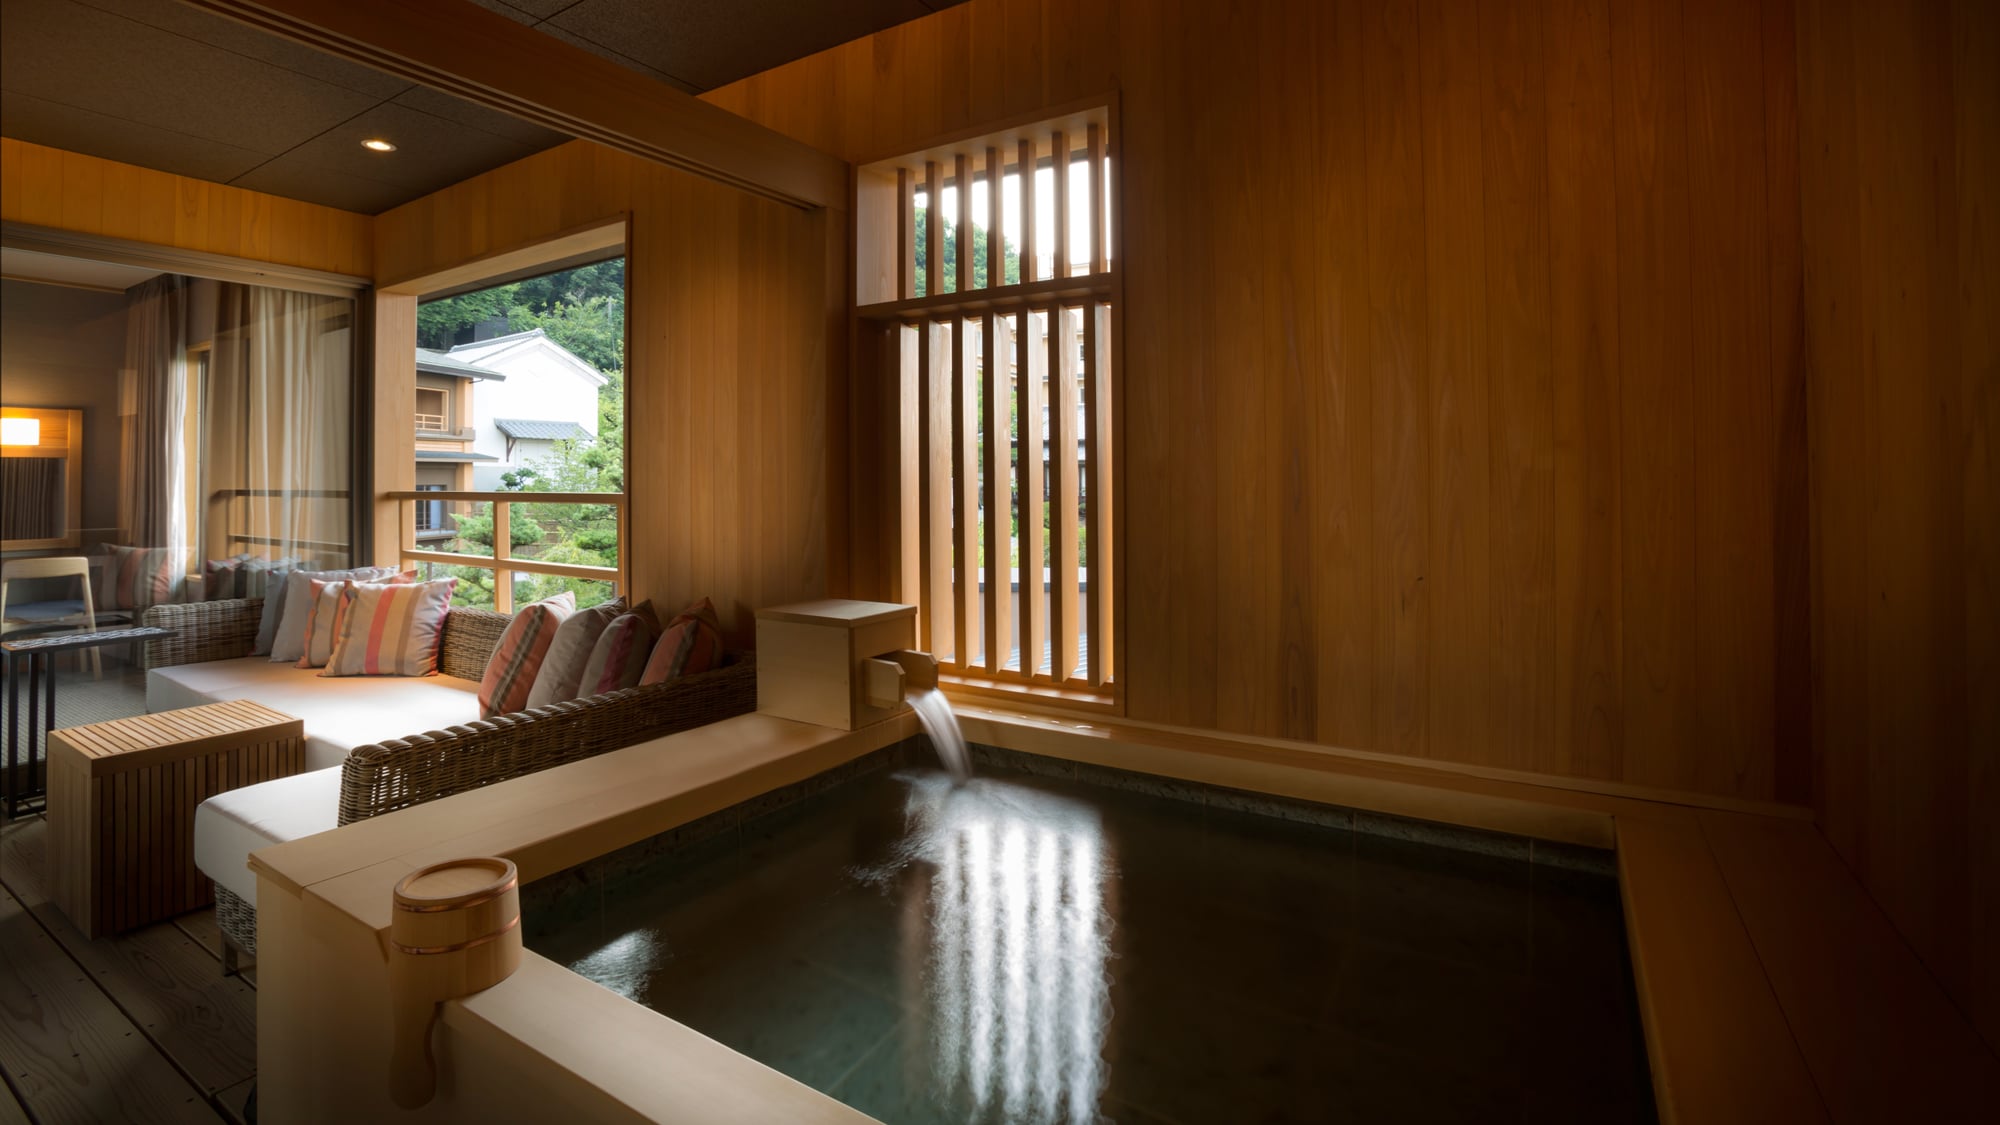 Sansuikaku / Japanese-Western style room A type